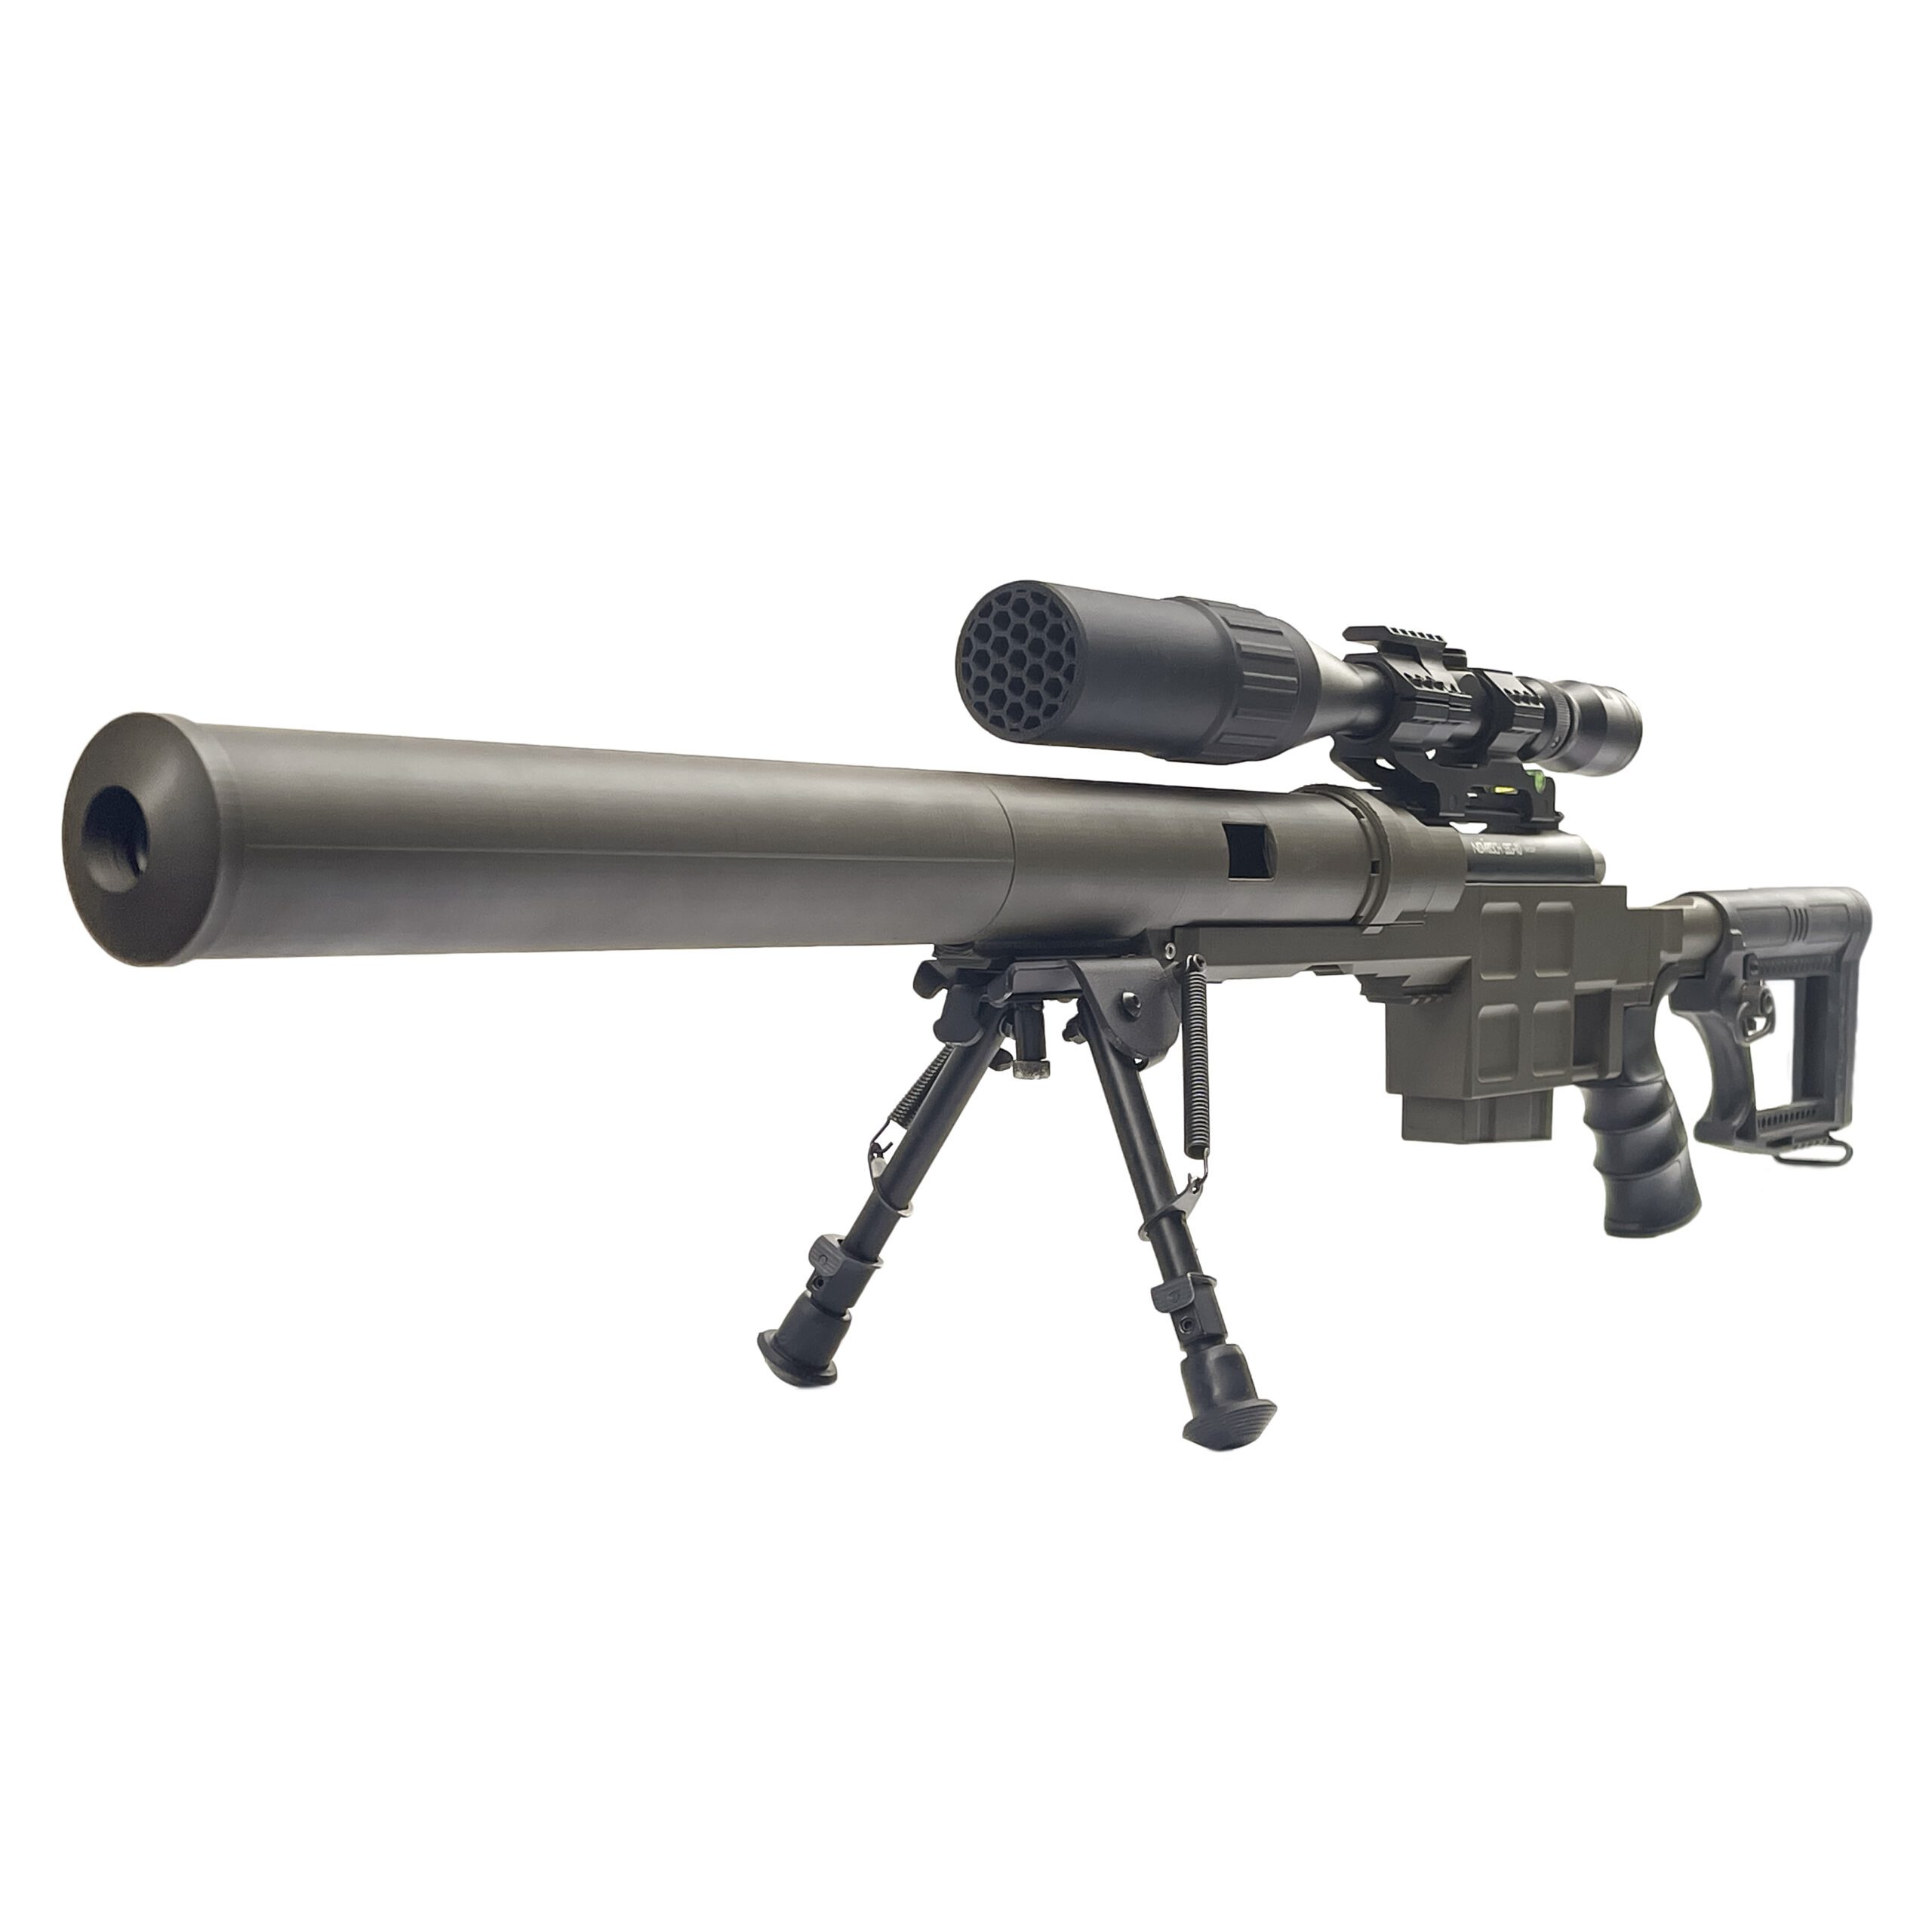 SSG10 A3 Short Barrel Airsoft Sniper Rifle - Novritsch - Negro